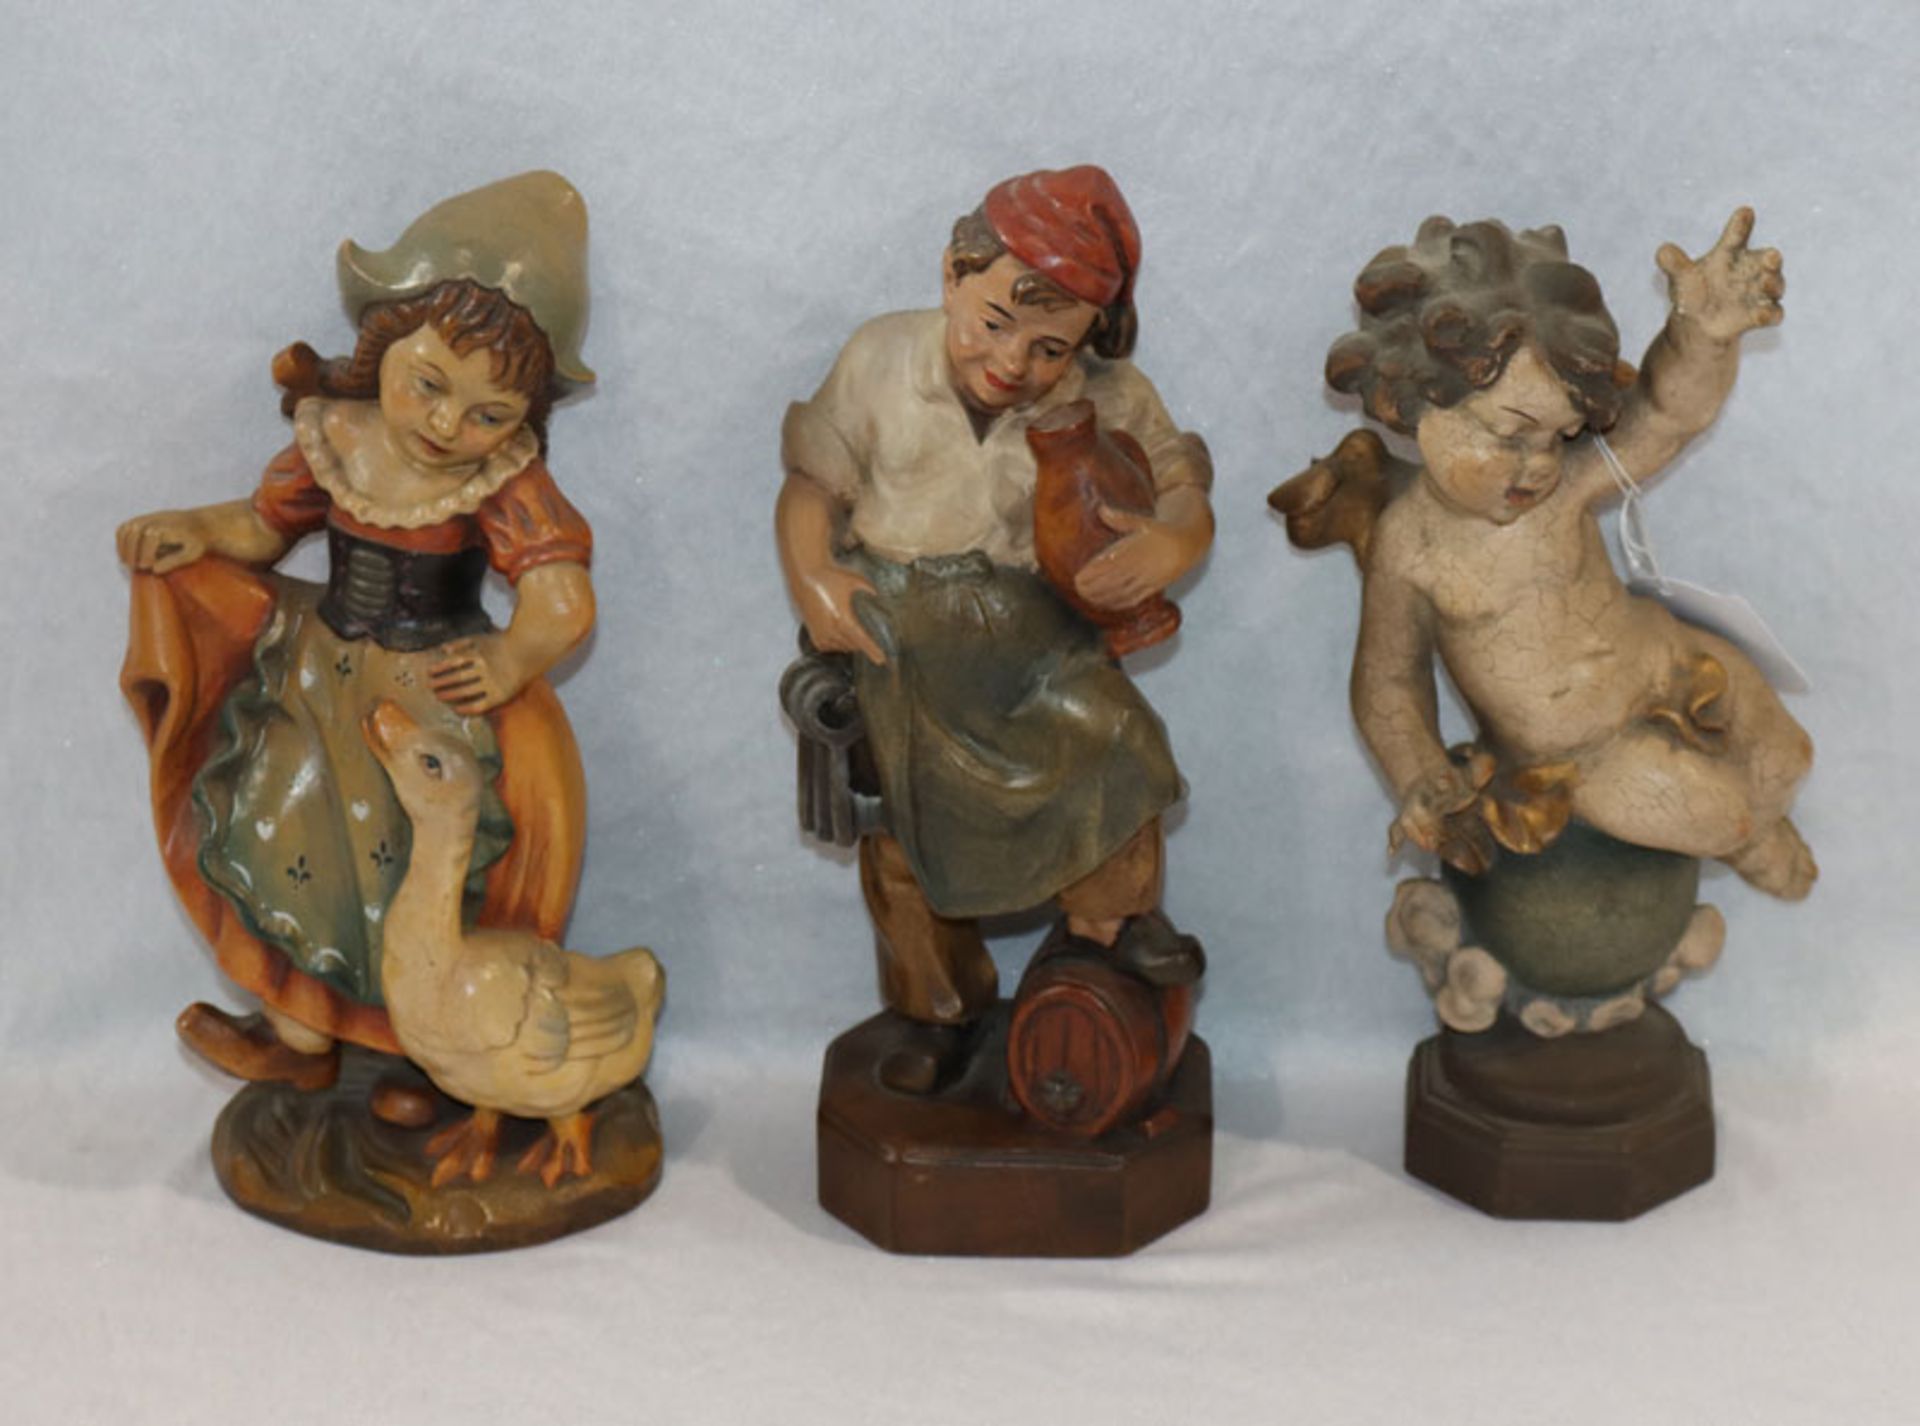 Konvolut von 3 Holz Figurensulpturen 'Gänseliesel', 'Wirt' und 'Engel', alle farbig gefaßt, H 24 cm,